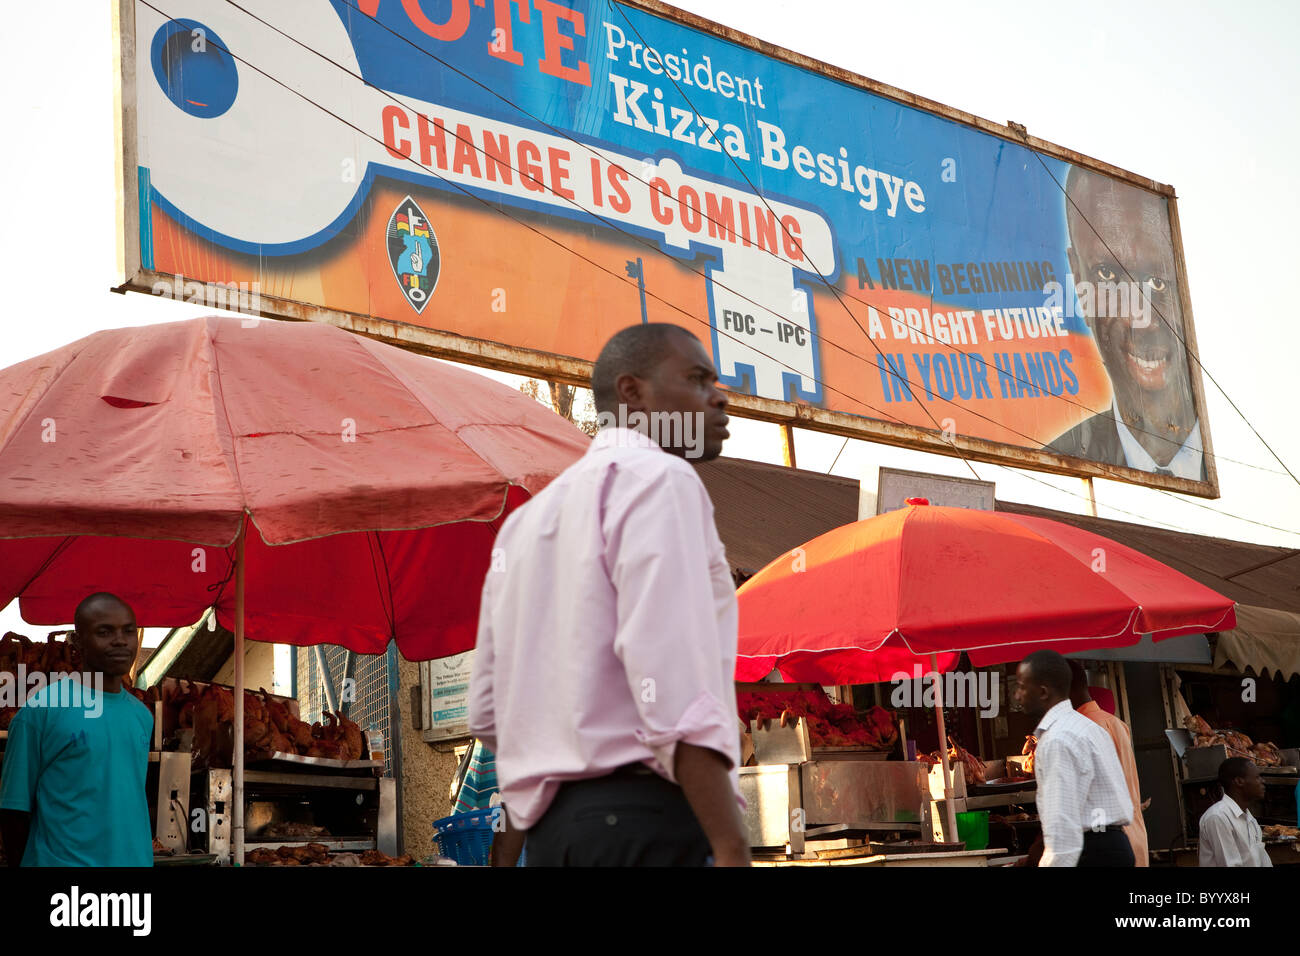 Les rues de Kampala, la capitale de l'Ouganda, sont parsemées de messages de campagne avant l'élection présidentielle du 18 février. Banque D'Images